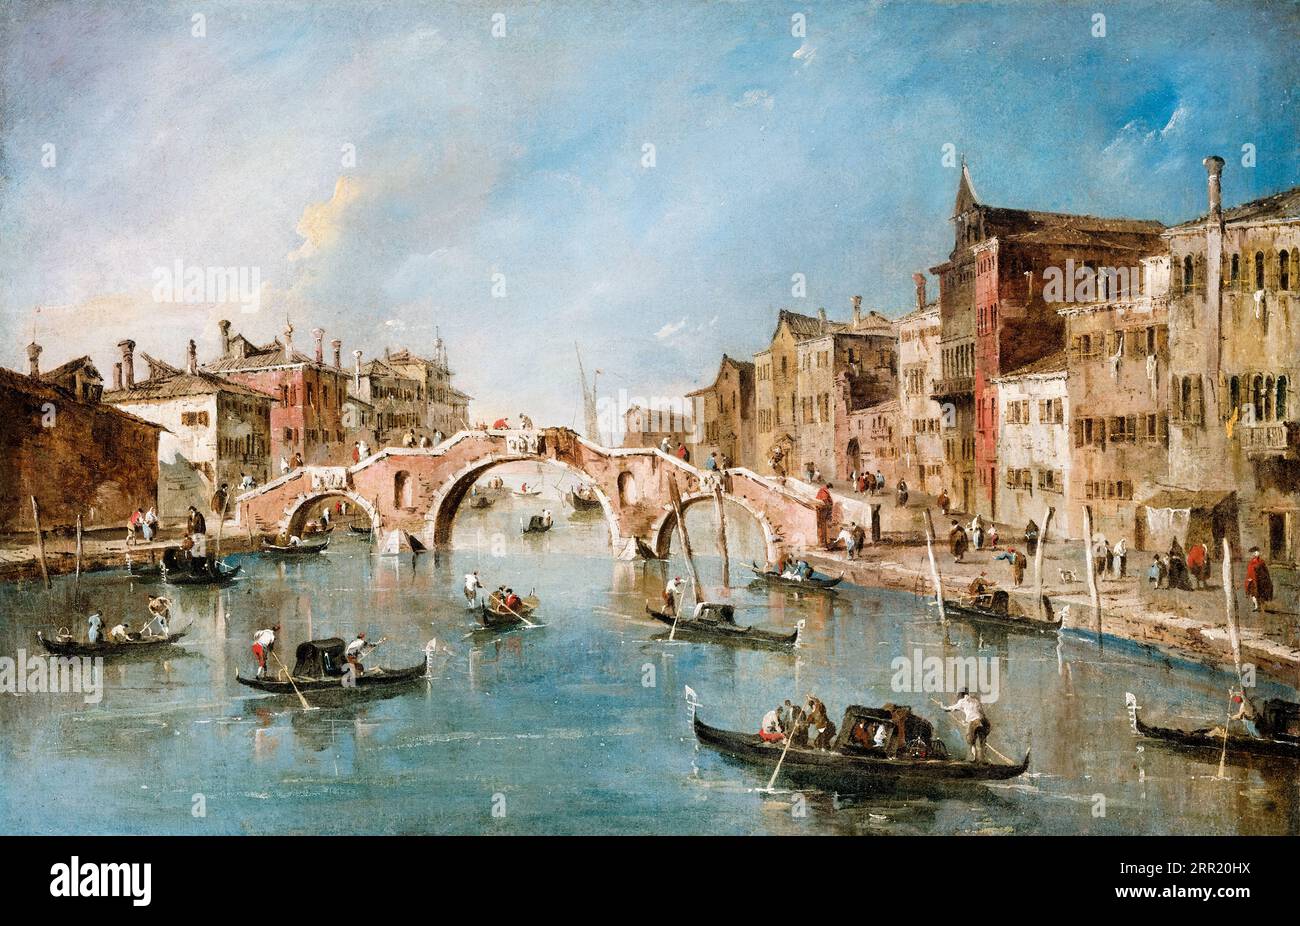 Francesco Guardi, vue sur le canal Cannaregio, Venise, peinture de paysage à l'huile sur toile, 1775-1780 Banque D'Images